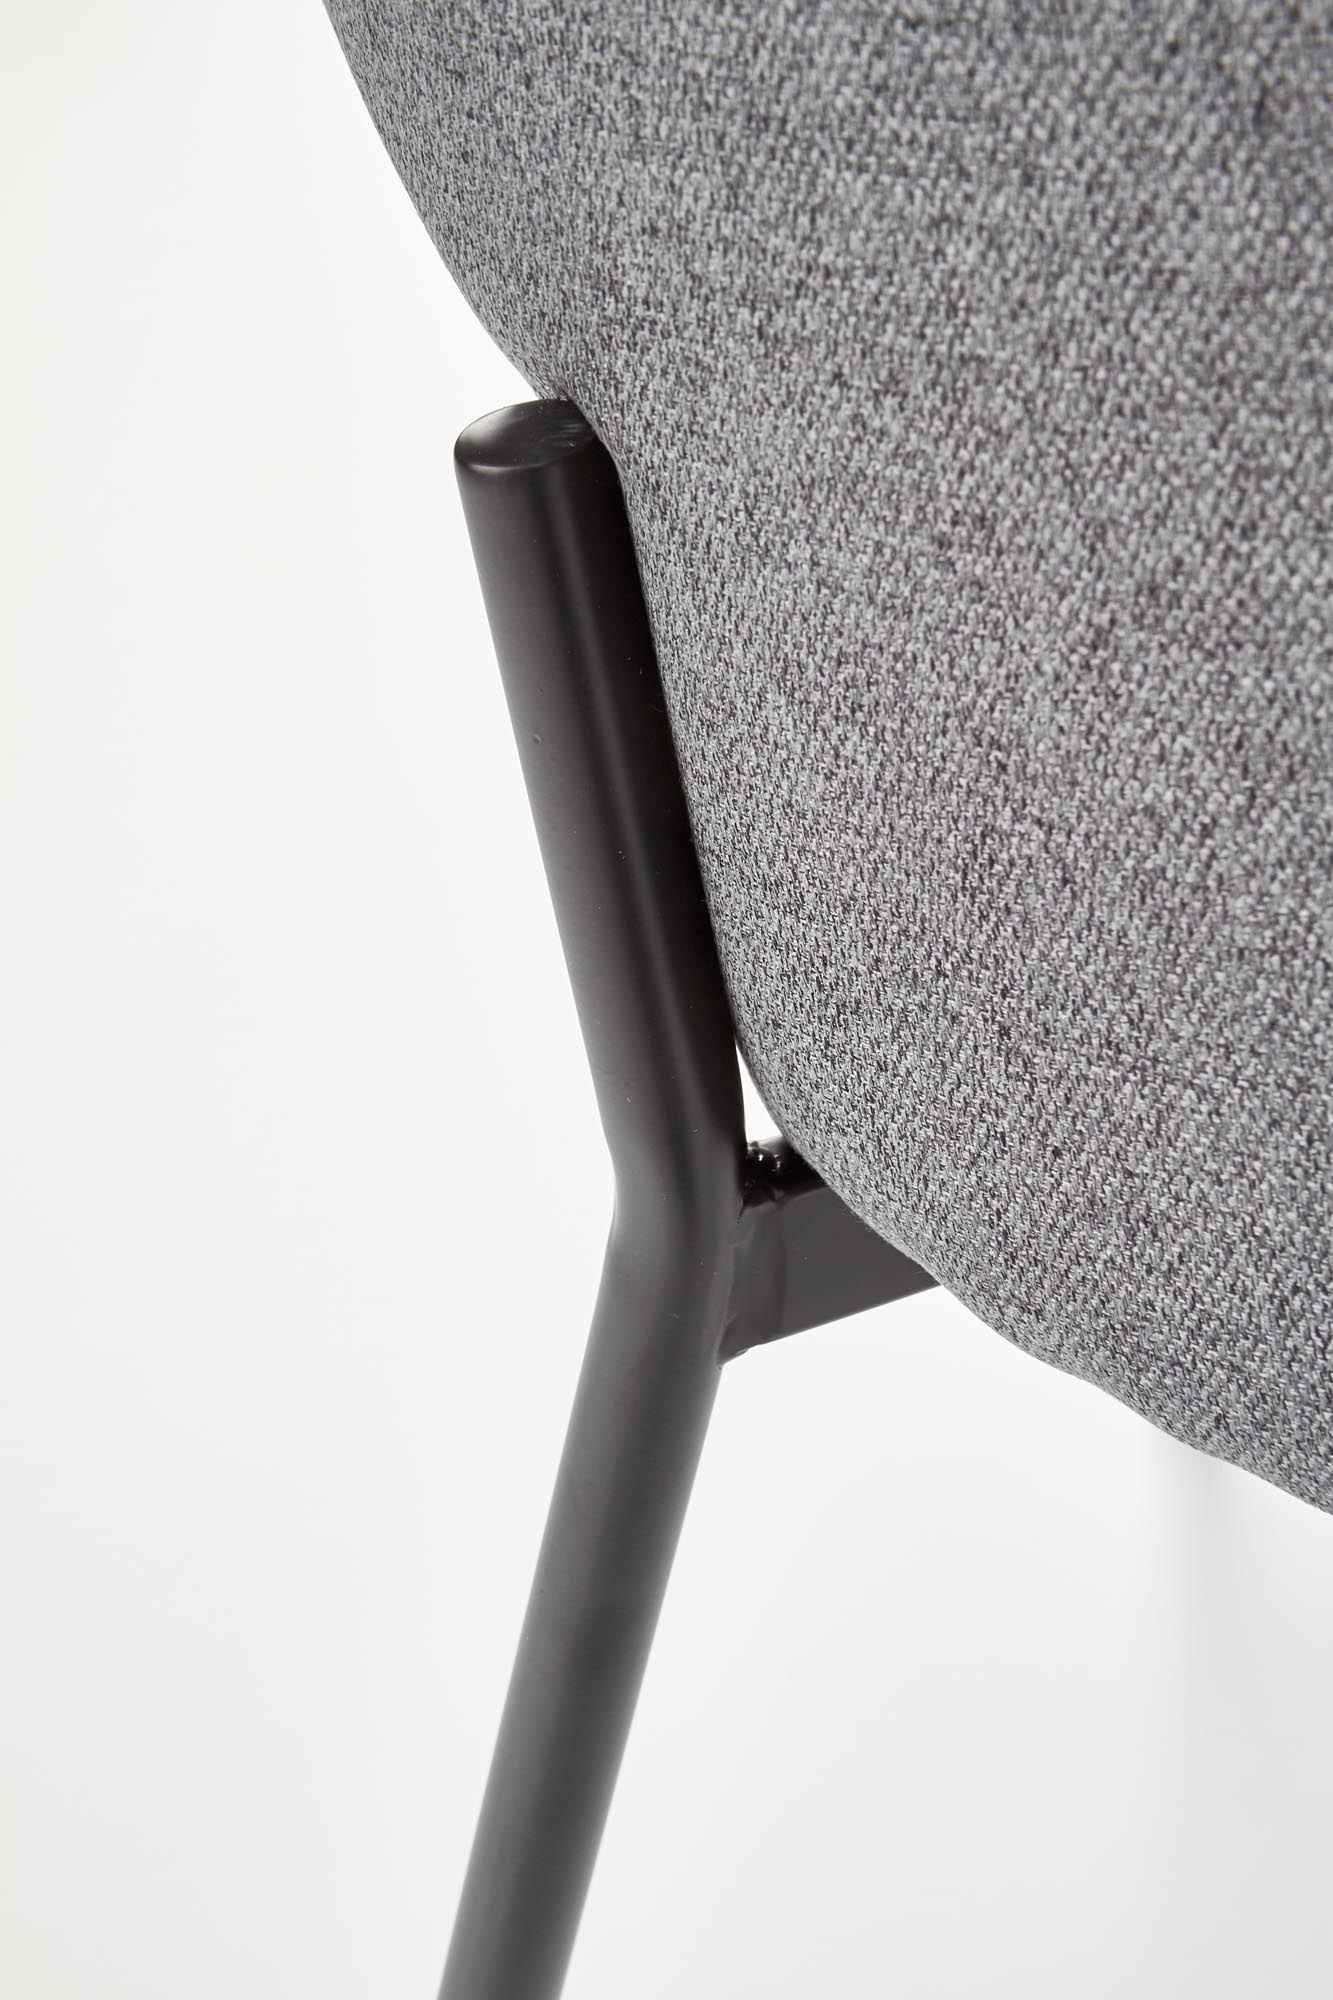 židle čalouněné na kovové podstavě K373 - Popelový Židle k373 - Popelový